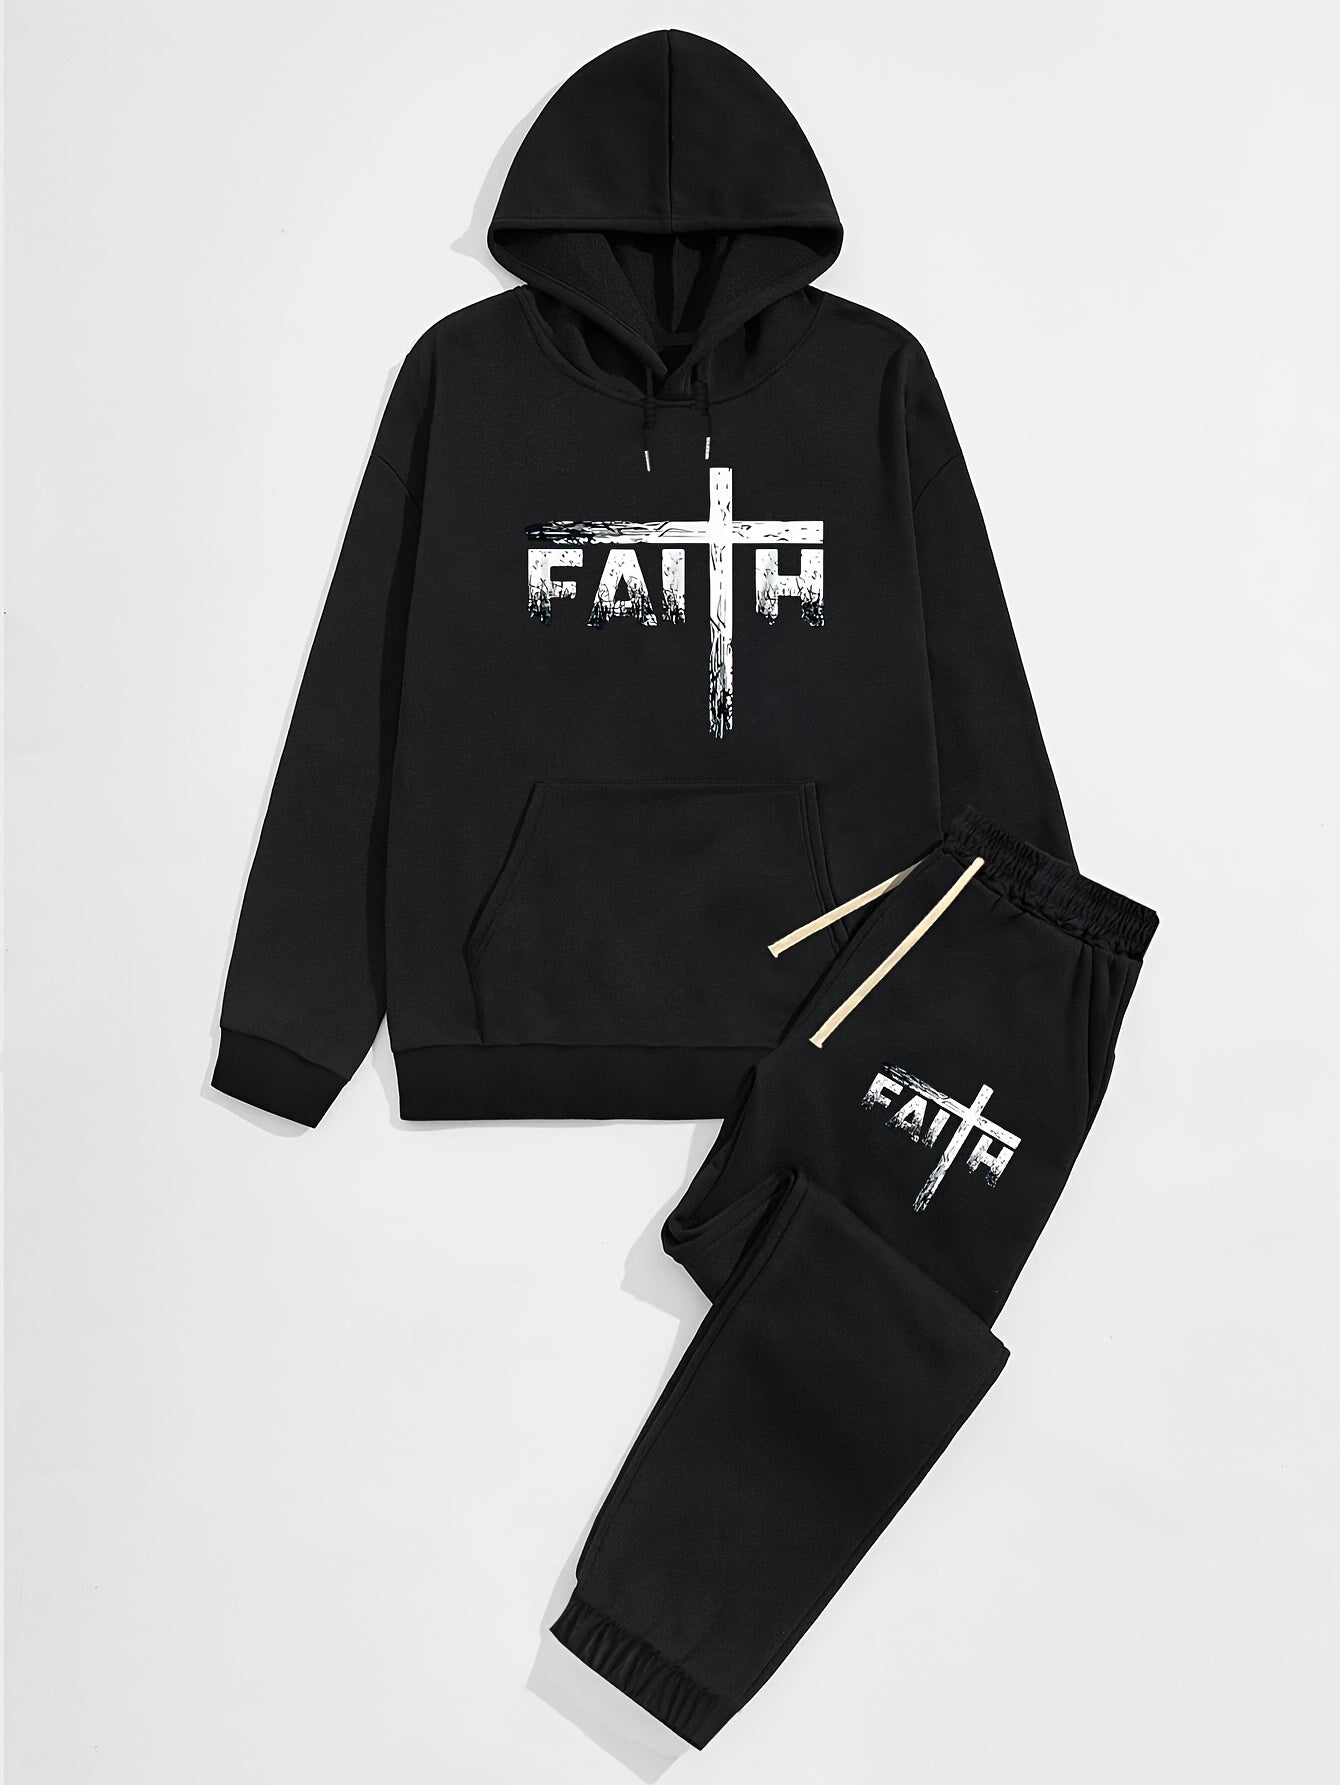 FAITH Men's Christian Casual Outfit claimedbygoddesigns